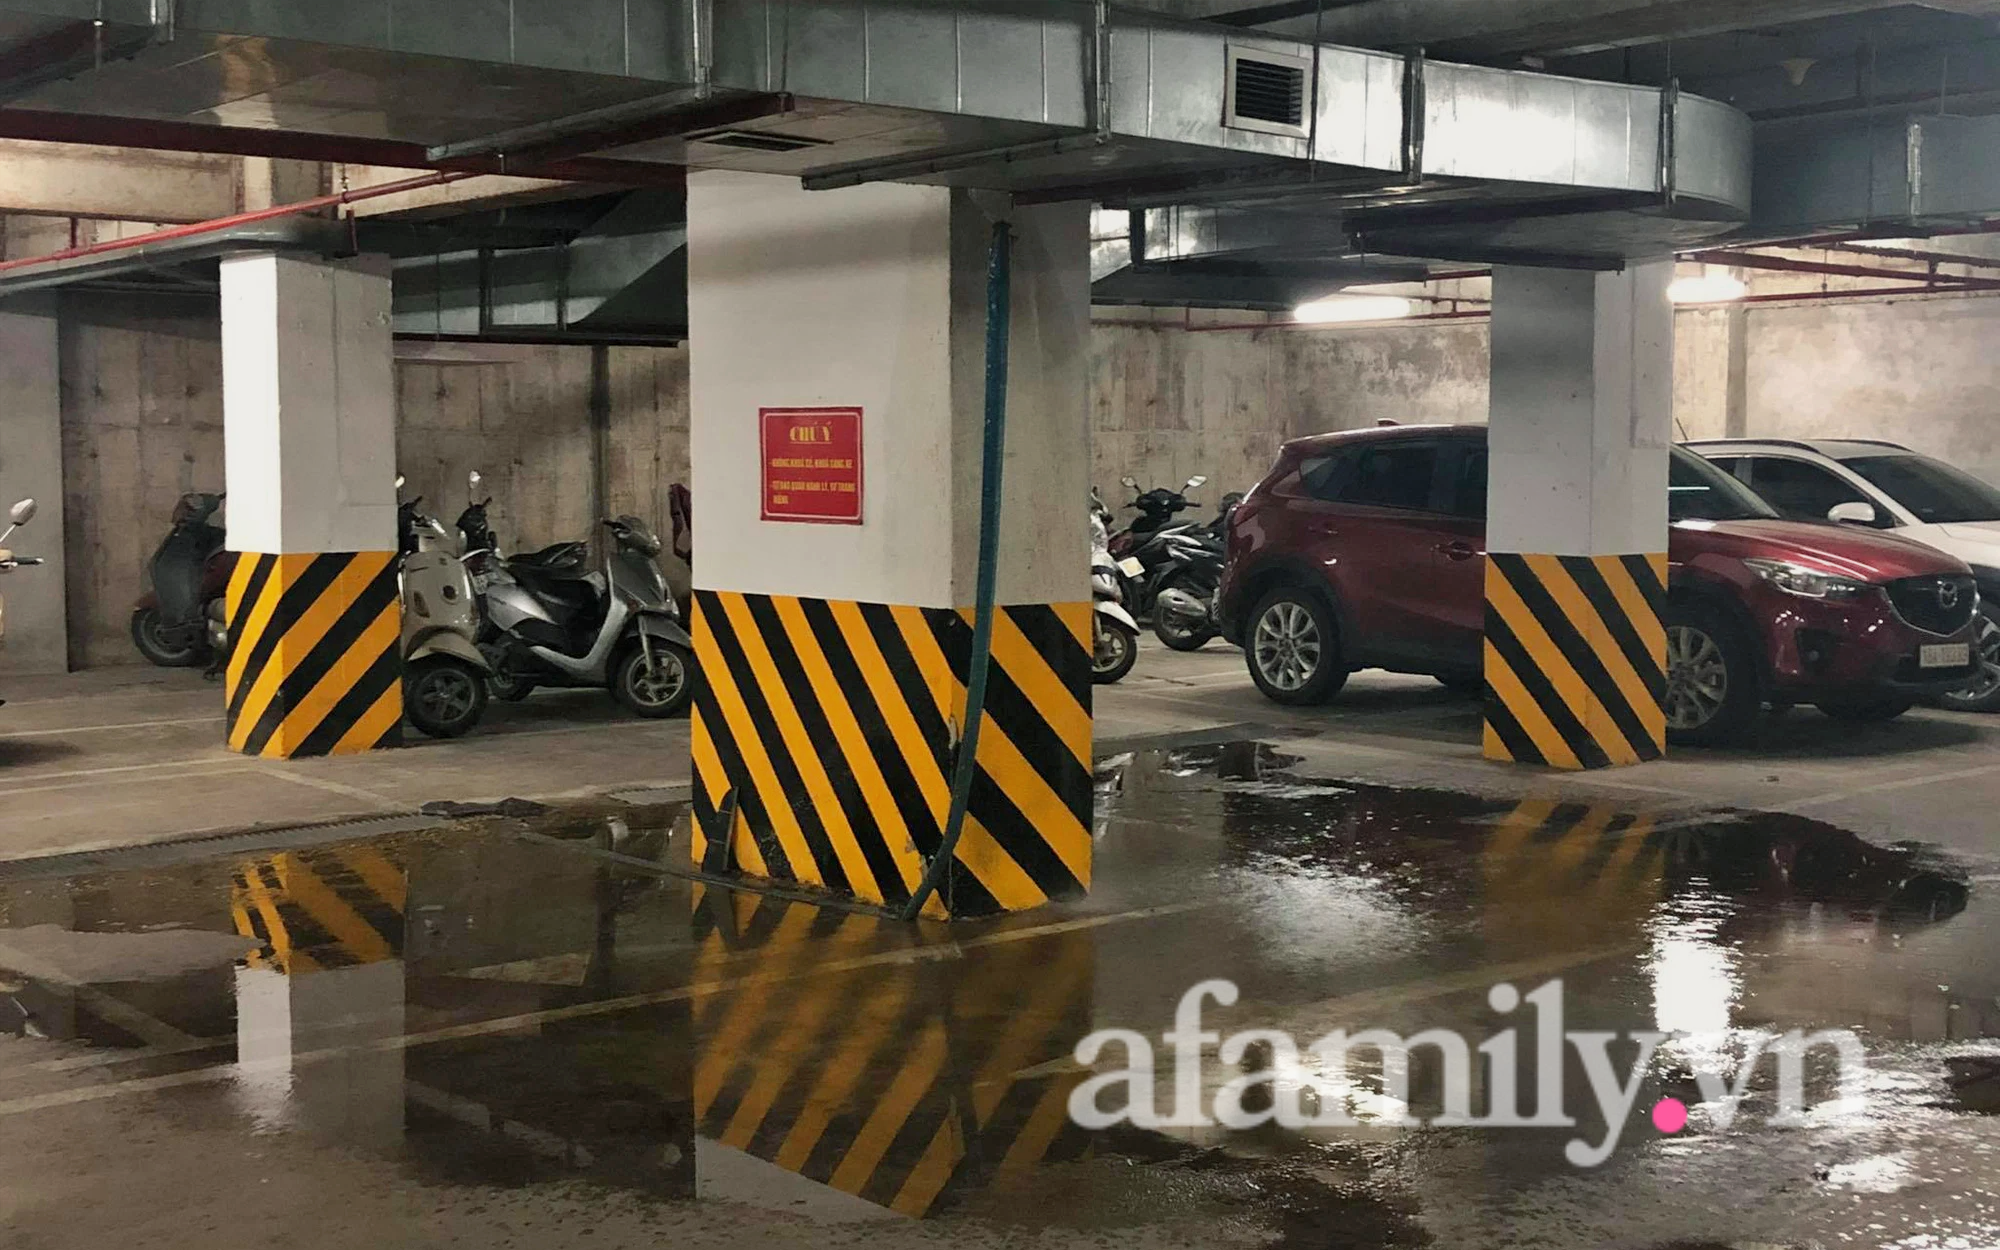 Hà Nội: Kinh hoàng cảnh nước bẩn như nước bể phốt lênh láng hầm để xe chung cư, dân tố Phó Ban quản trị vô trách nhiệm